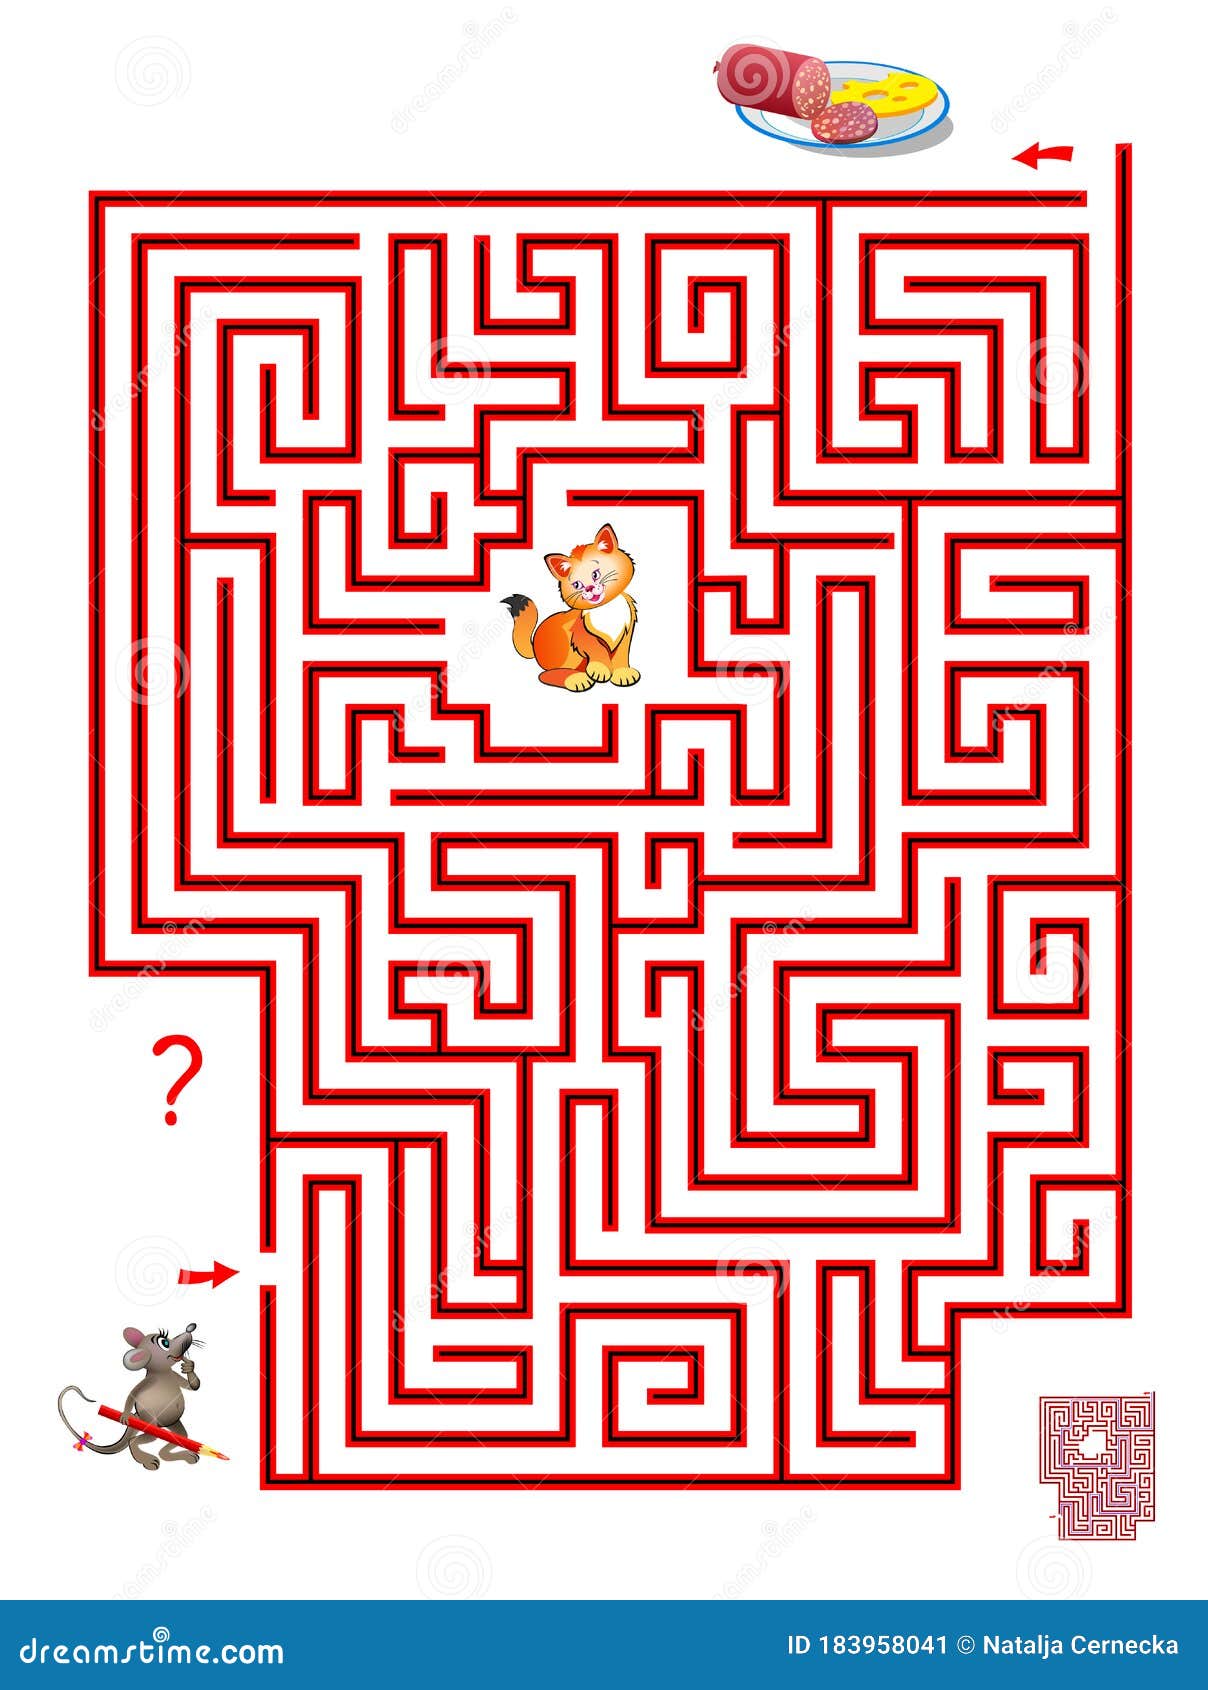 labirinto, ajude o menino a encontrar o caminho certo para o